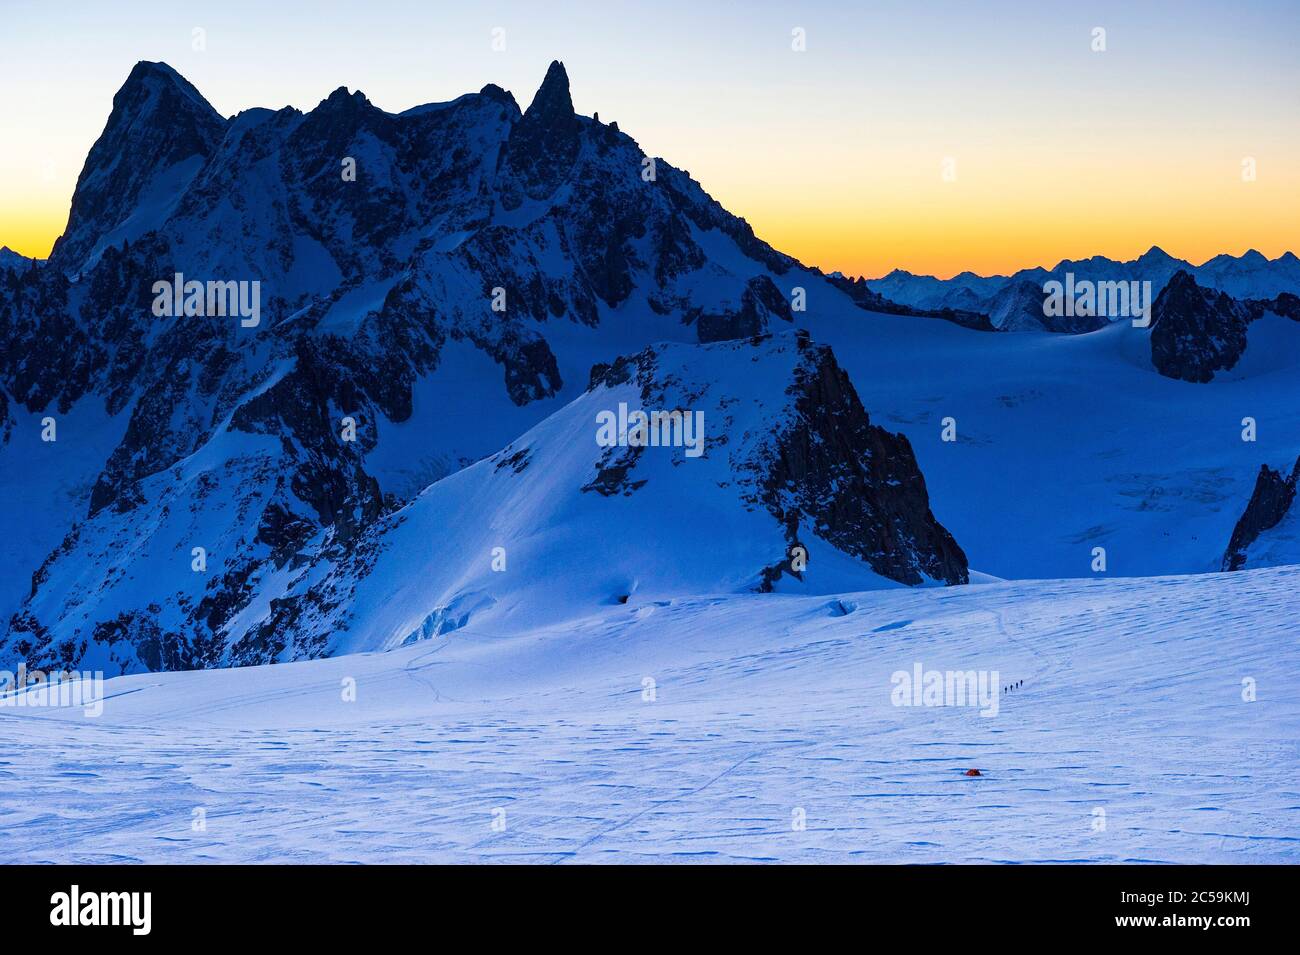 France, haute Savoie, Chamonix Mont blanc, première lumière du jour sur les grandes Jorasse (4208 m), le Dôme de Rochefort (4015 m), l'Araque de Rochefort et le Dent du géant (4013 m) vu du refuge des Cosmiques Banque D'Images